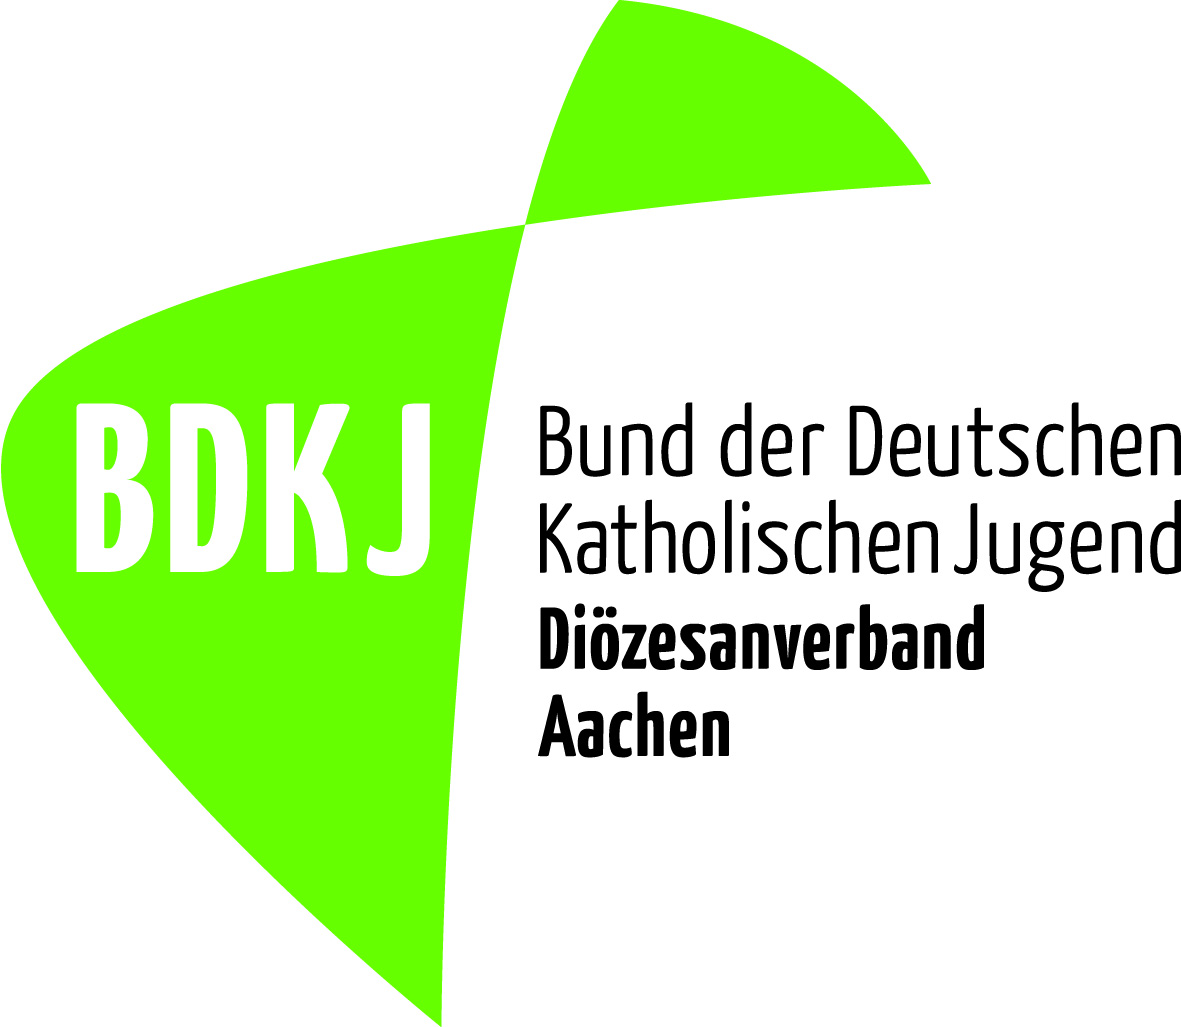 bdkj_logo_aachen_4c (c) BDKJ